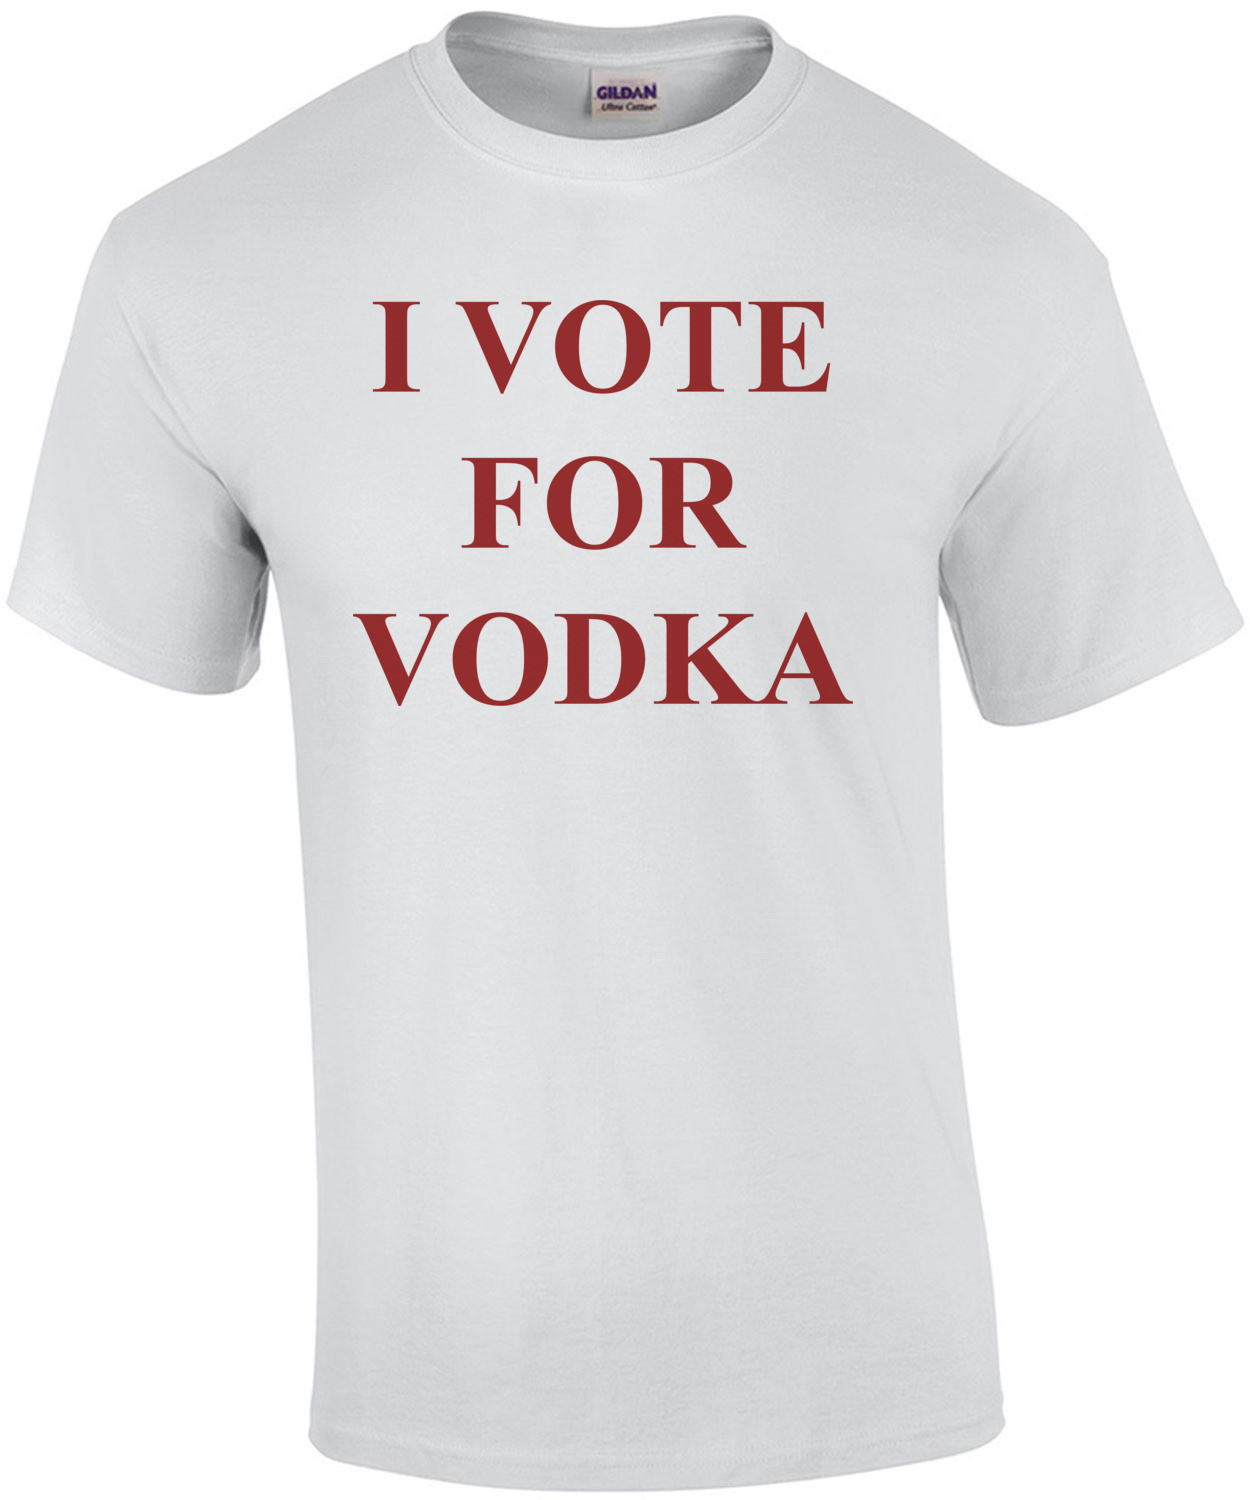 I VOTE FOR VODKA T-Shirt